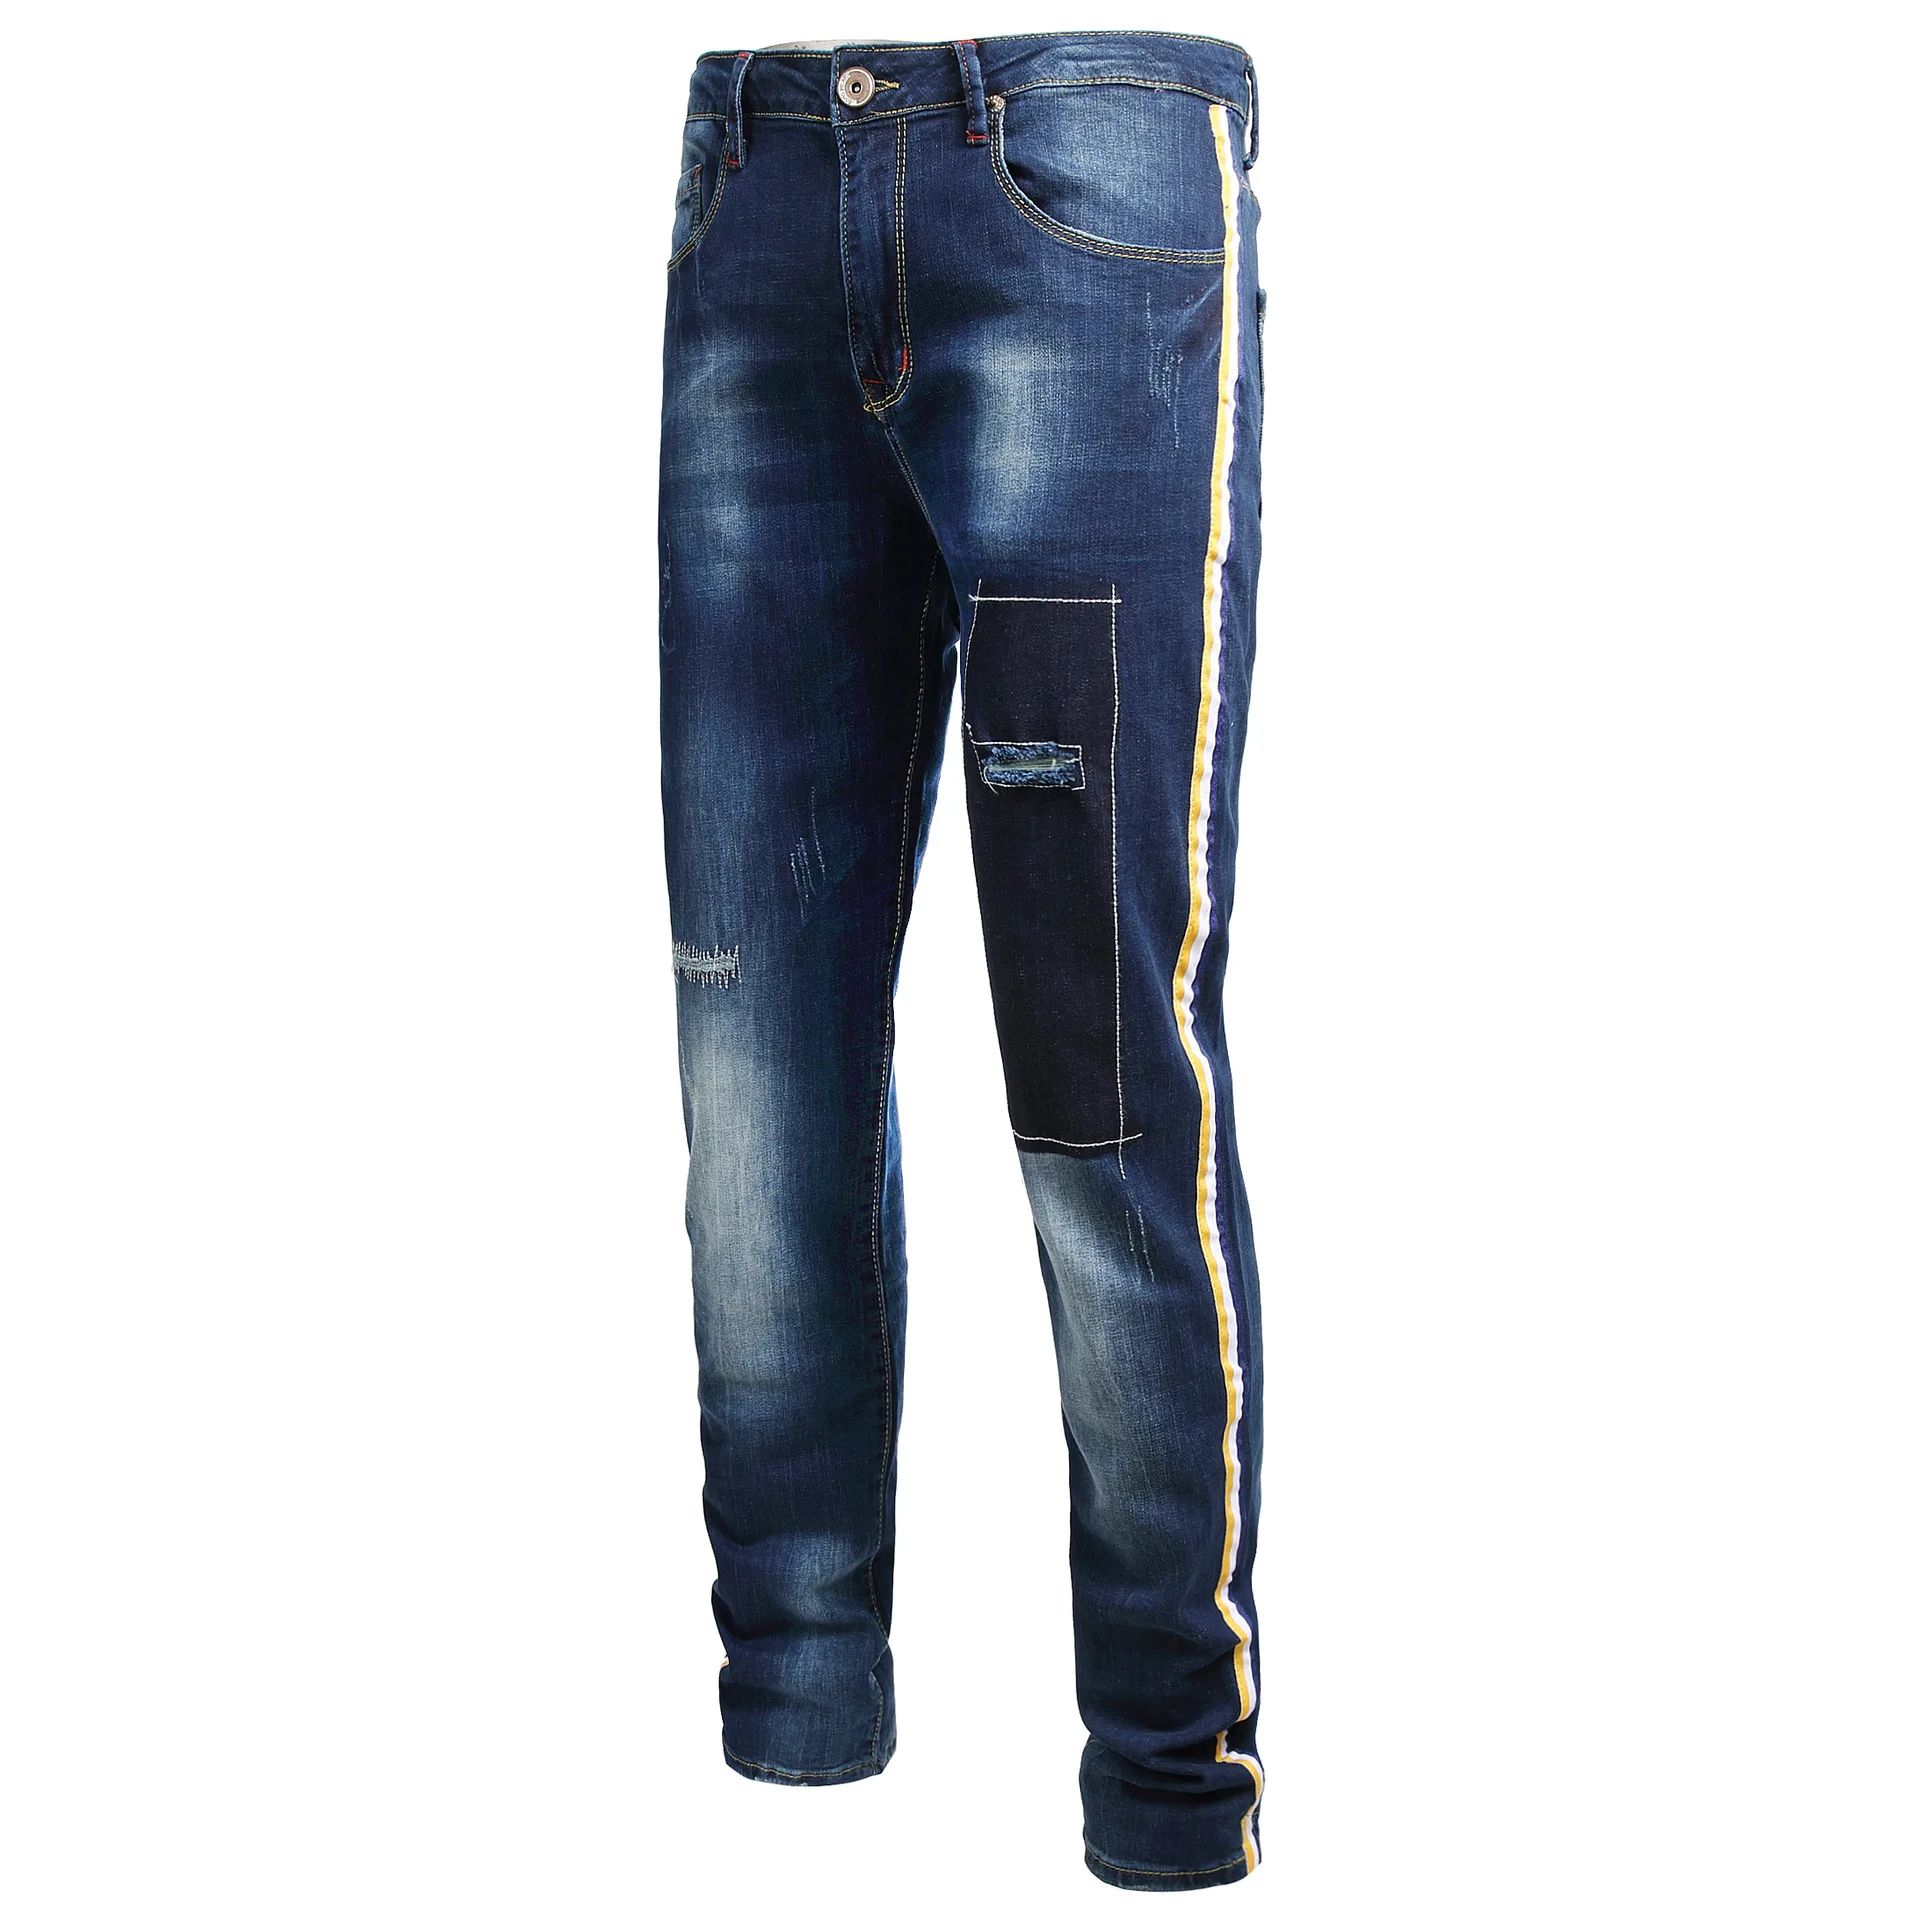 Вышитые большие размеры 40 42 мужские джинсы с дырками мужские джинсовые брюки джинсы тонкие прямые синие джинсы для мужчин большие размеры